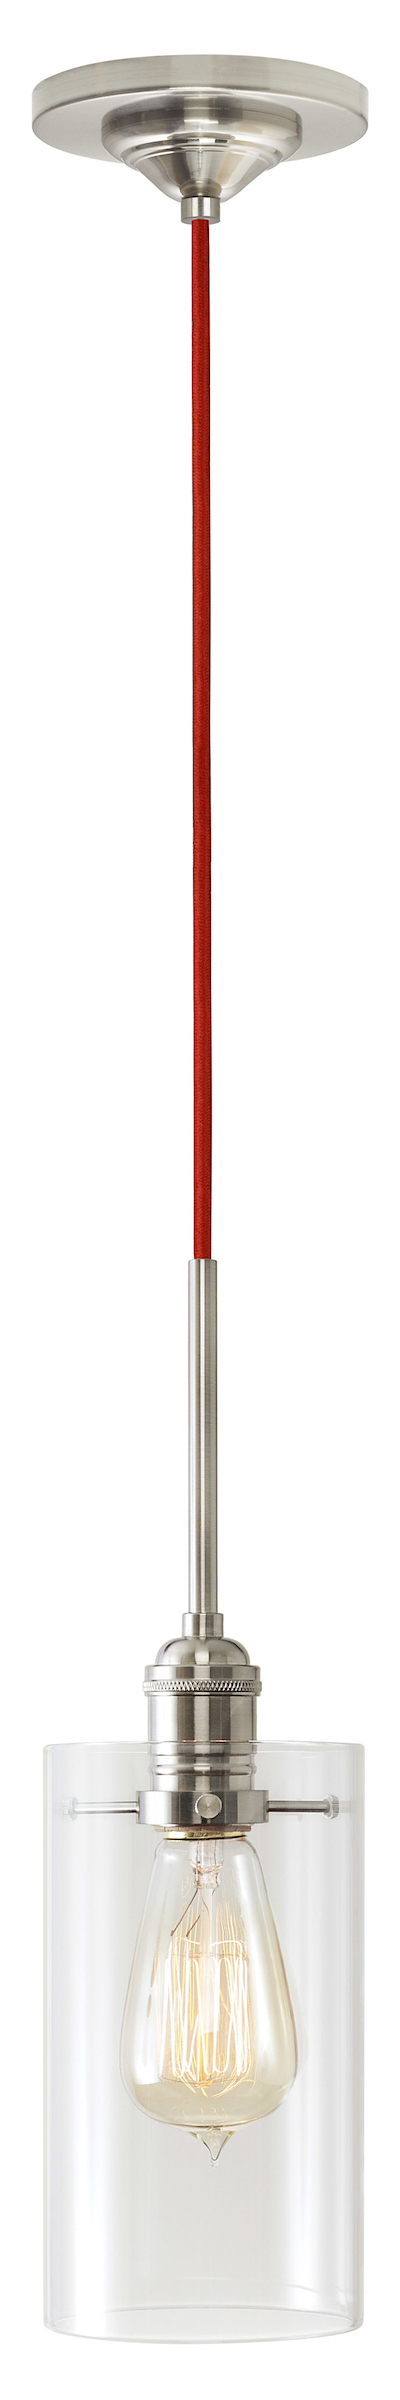 Pendant Retro Cylinder II Clear Glass PN E26 Retro 60W Red Cord